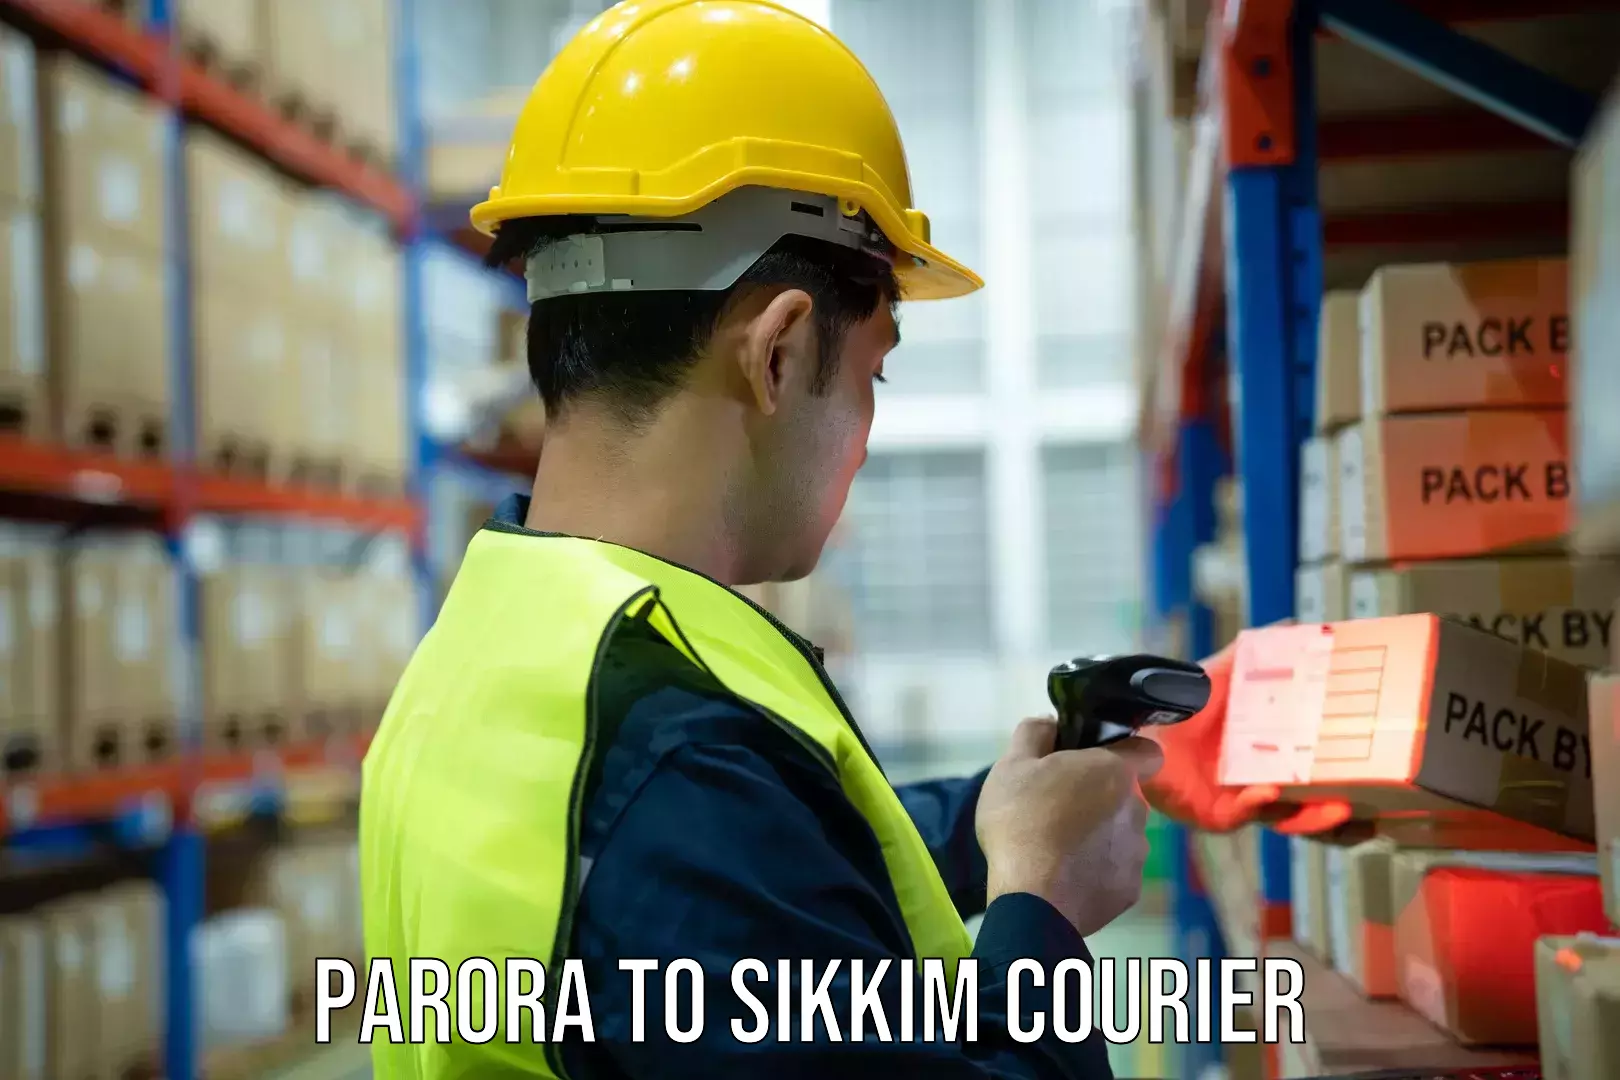 Doorstep delivery service Parora to West Sikkim